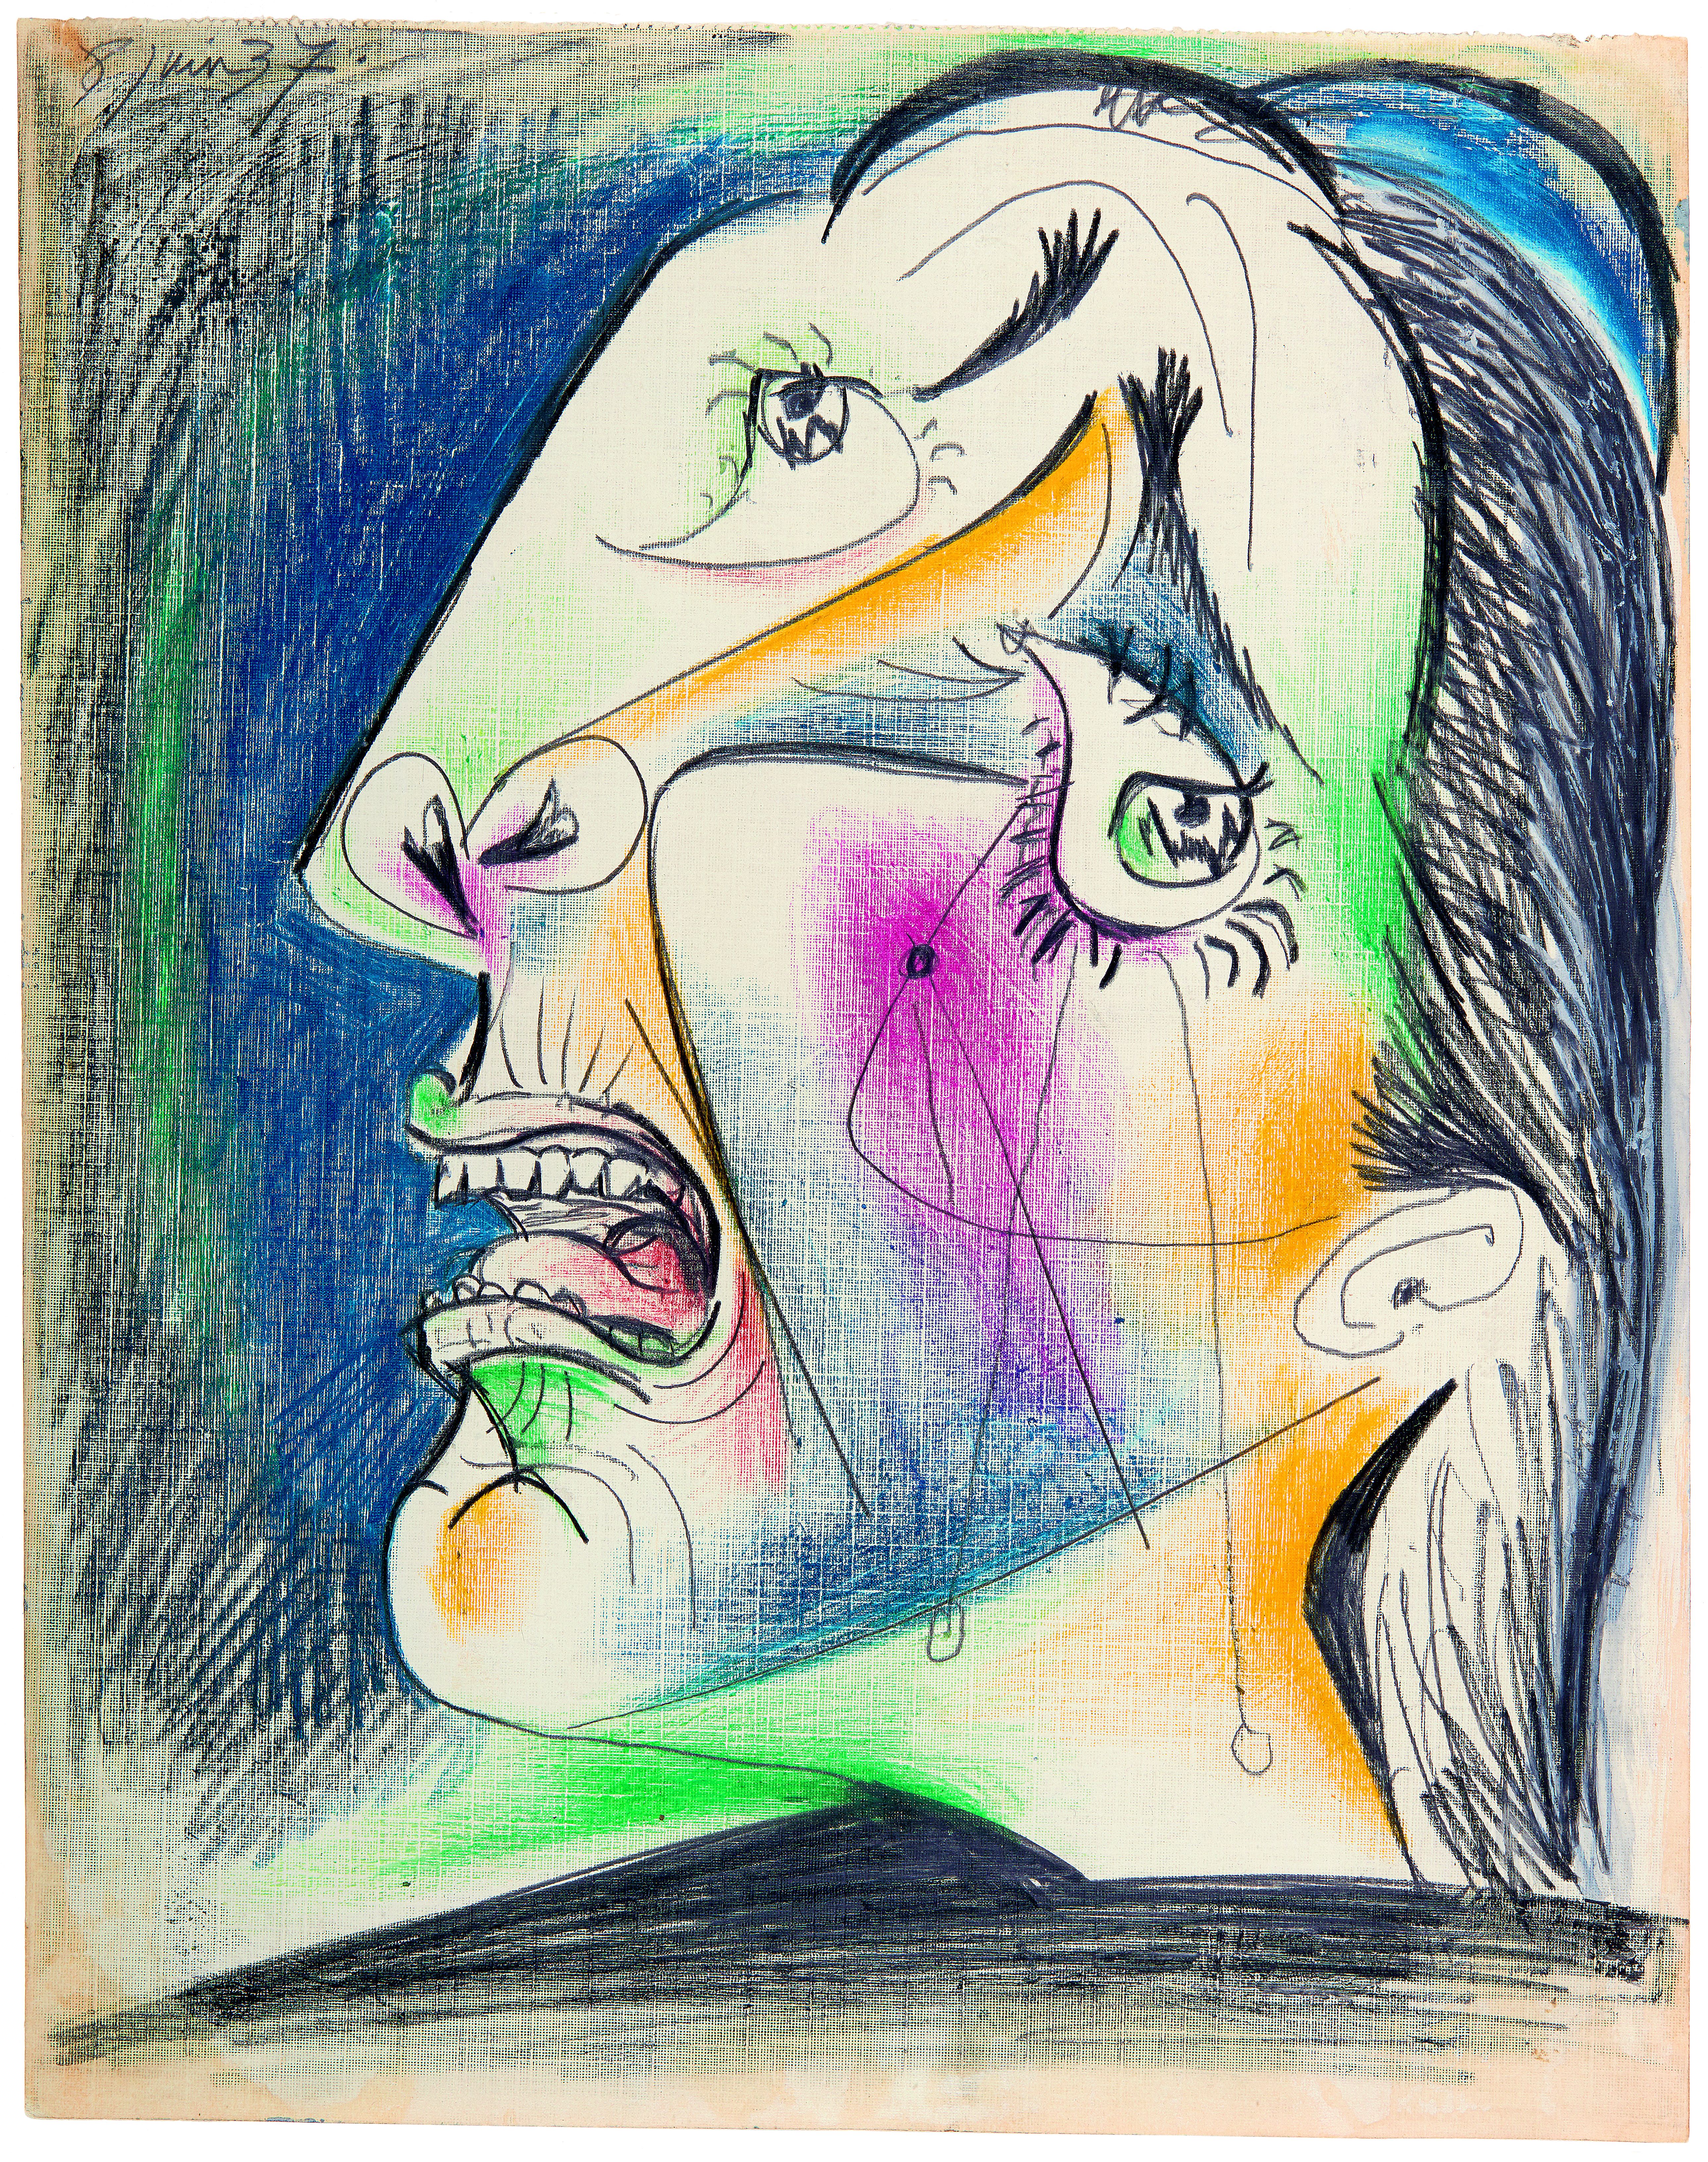 Picasso Drawings Exhibition Centre Pompidou - Tete qui pleure 